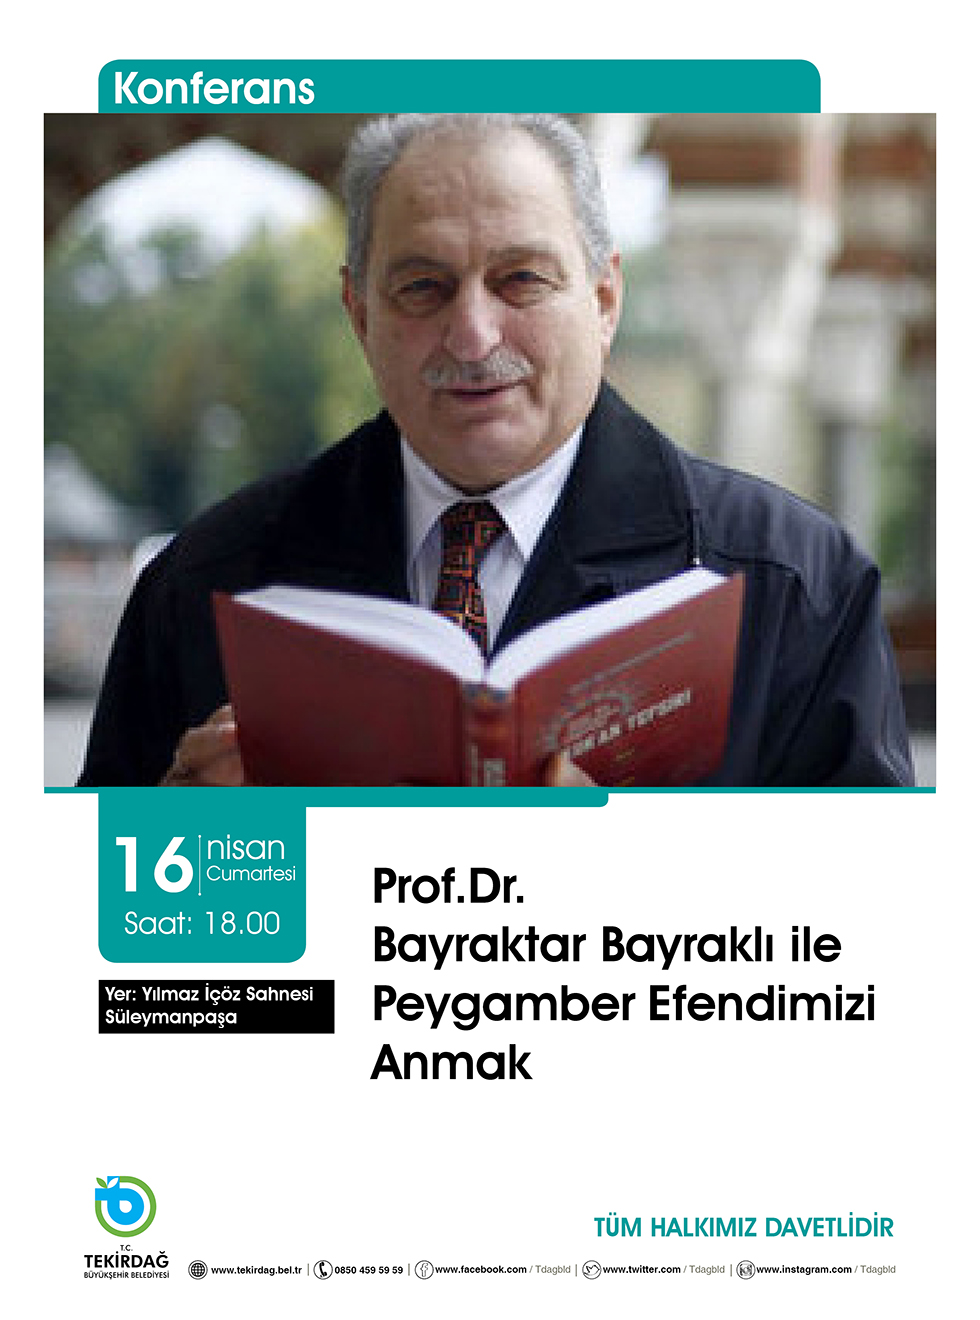 Prof.Dr. Bayraktar BAYRAKLI ile ''Peygamber Efendimizi Anmak'' Konulu KONFERANS